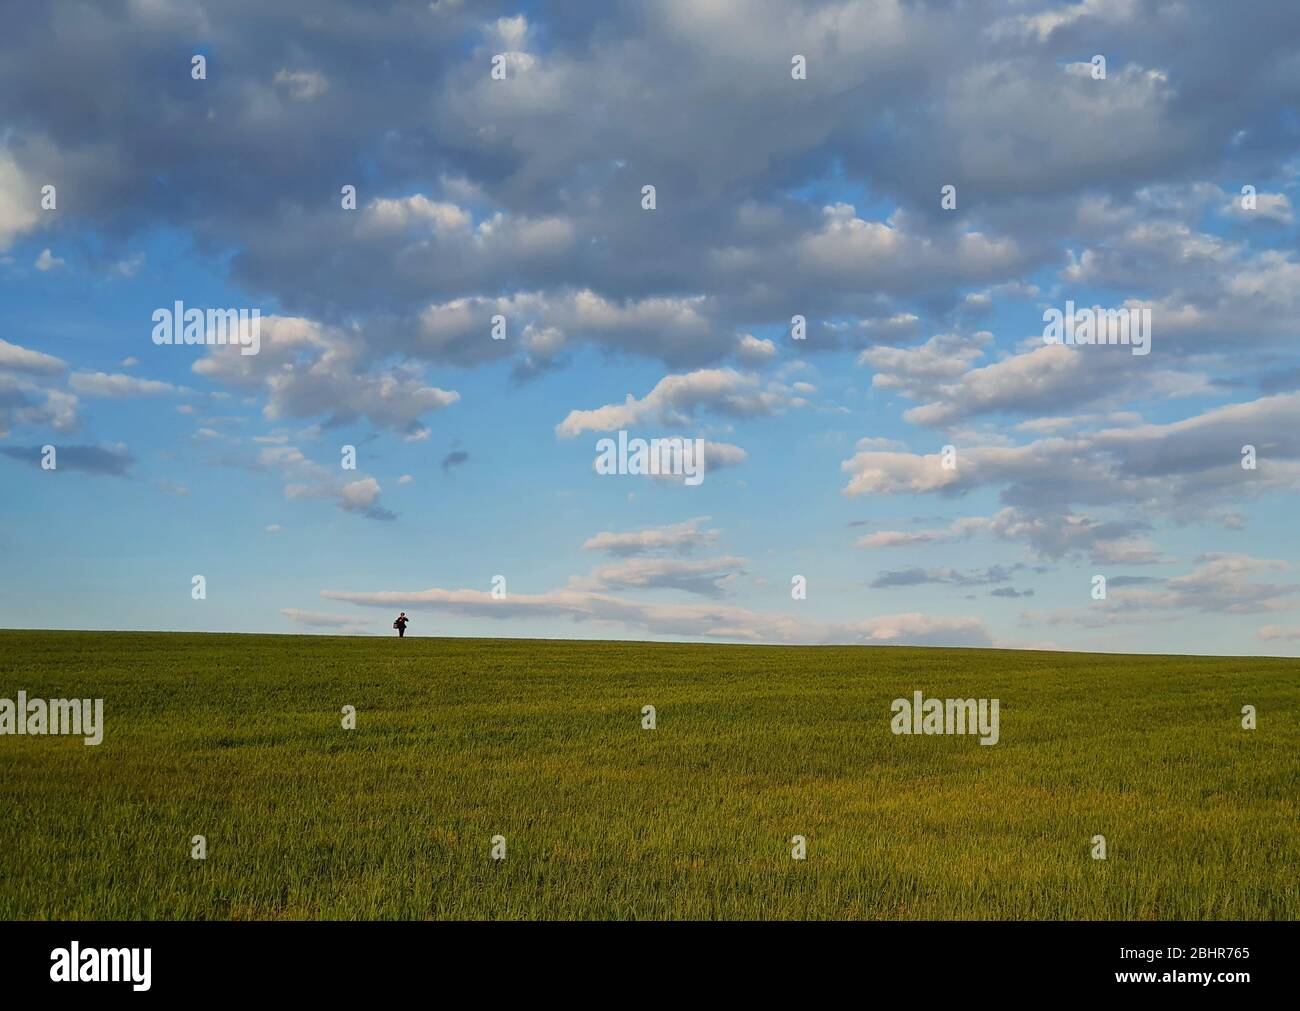 Winzige Person Silhouette am Horizont zu Fuß ein grünes Weizenfeld unter einem blauen Himmel mit flauschigen Wolken. Natürlicher Frühlingshintergrund, ruhige Szene, Idylle Stockfoto